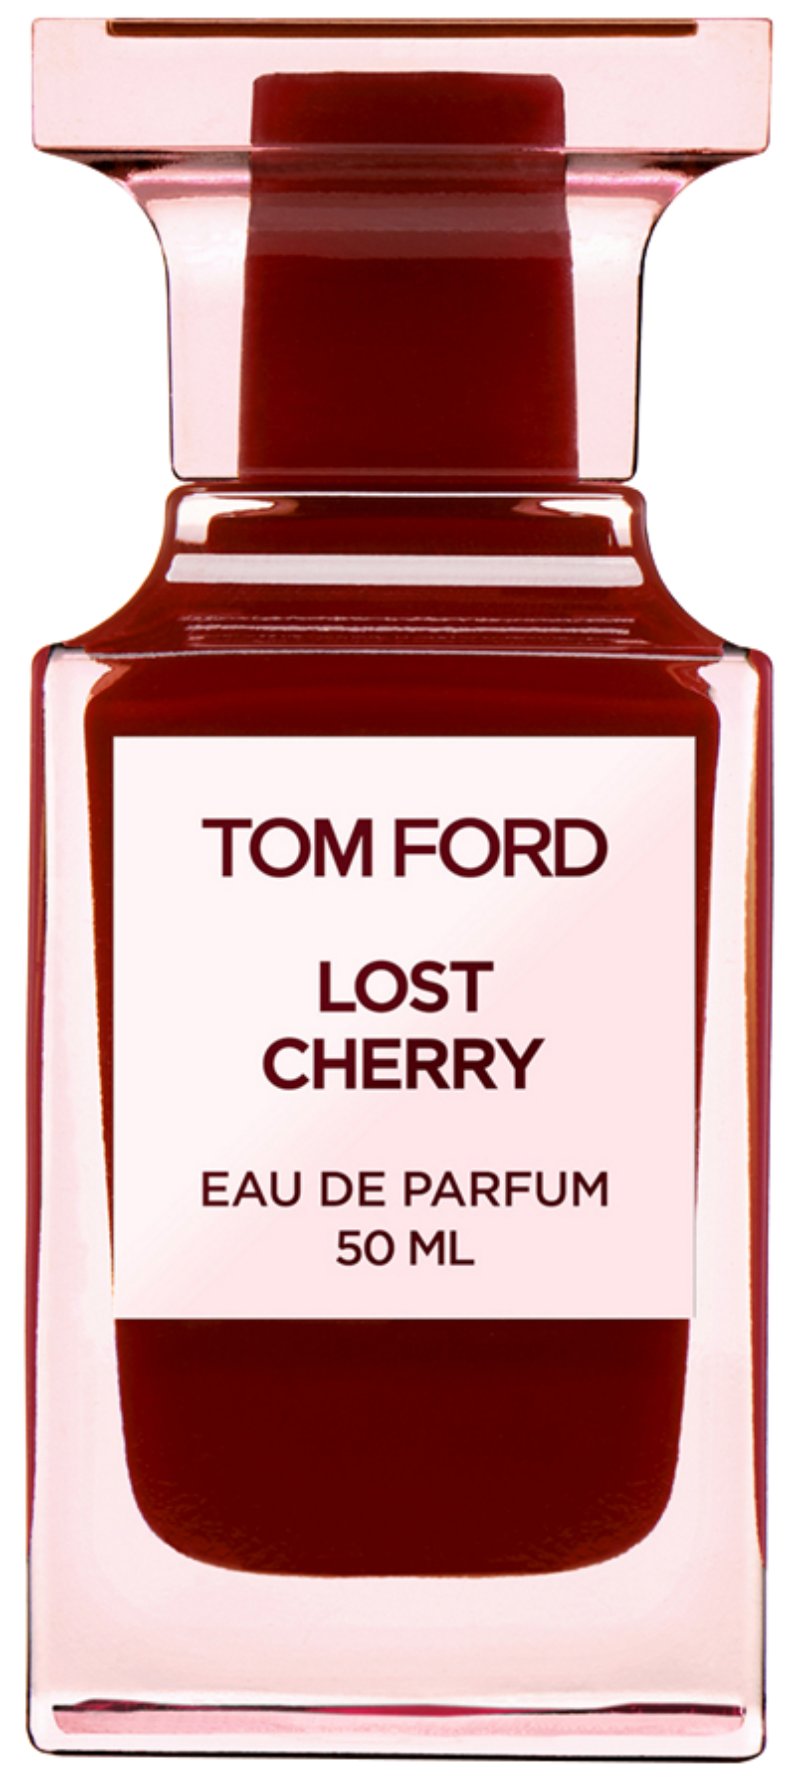 Tom Ford Lost Cherry 50 ml Eau de Parfum